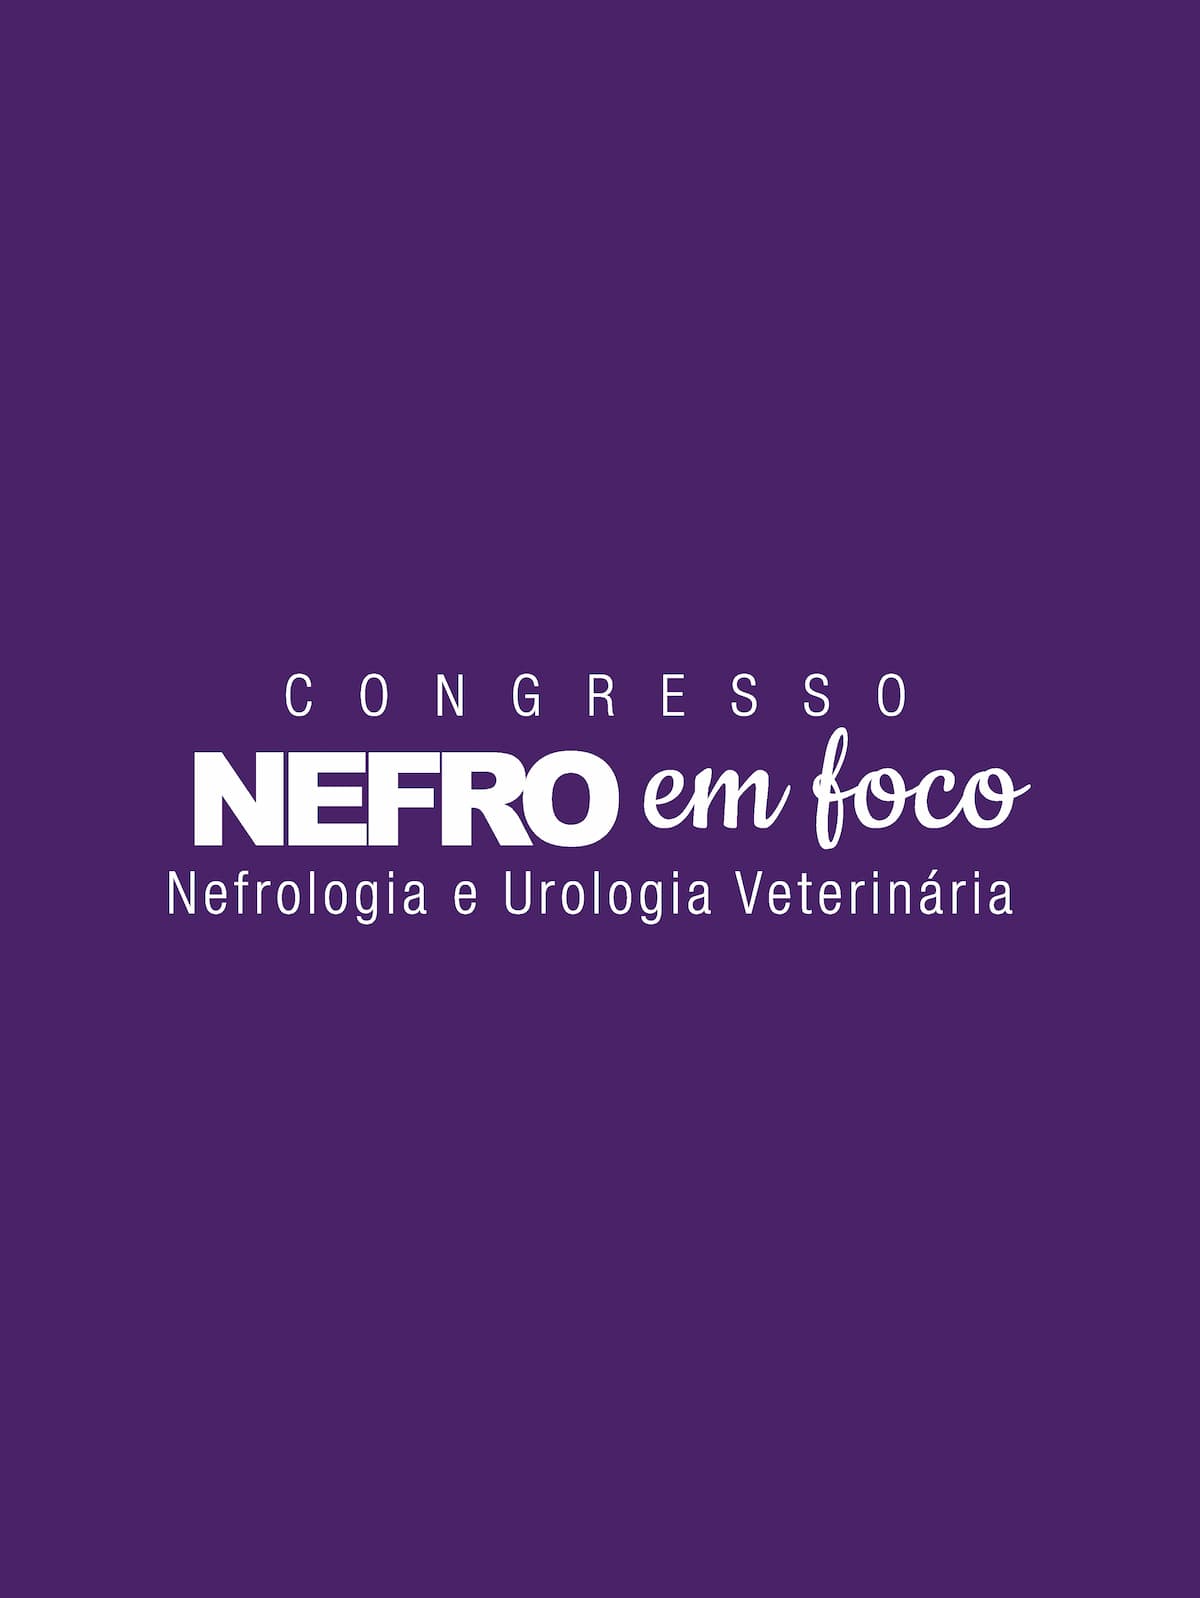 Congresso Nefro em Foco Veterinários dia 24/04/24